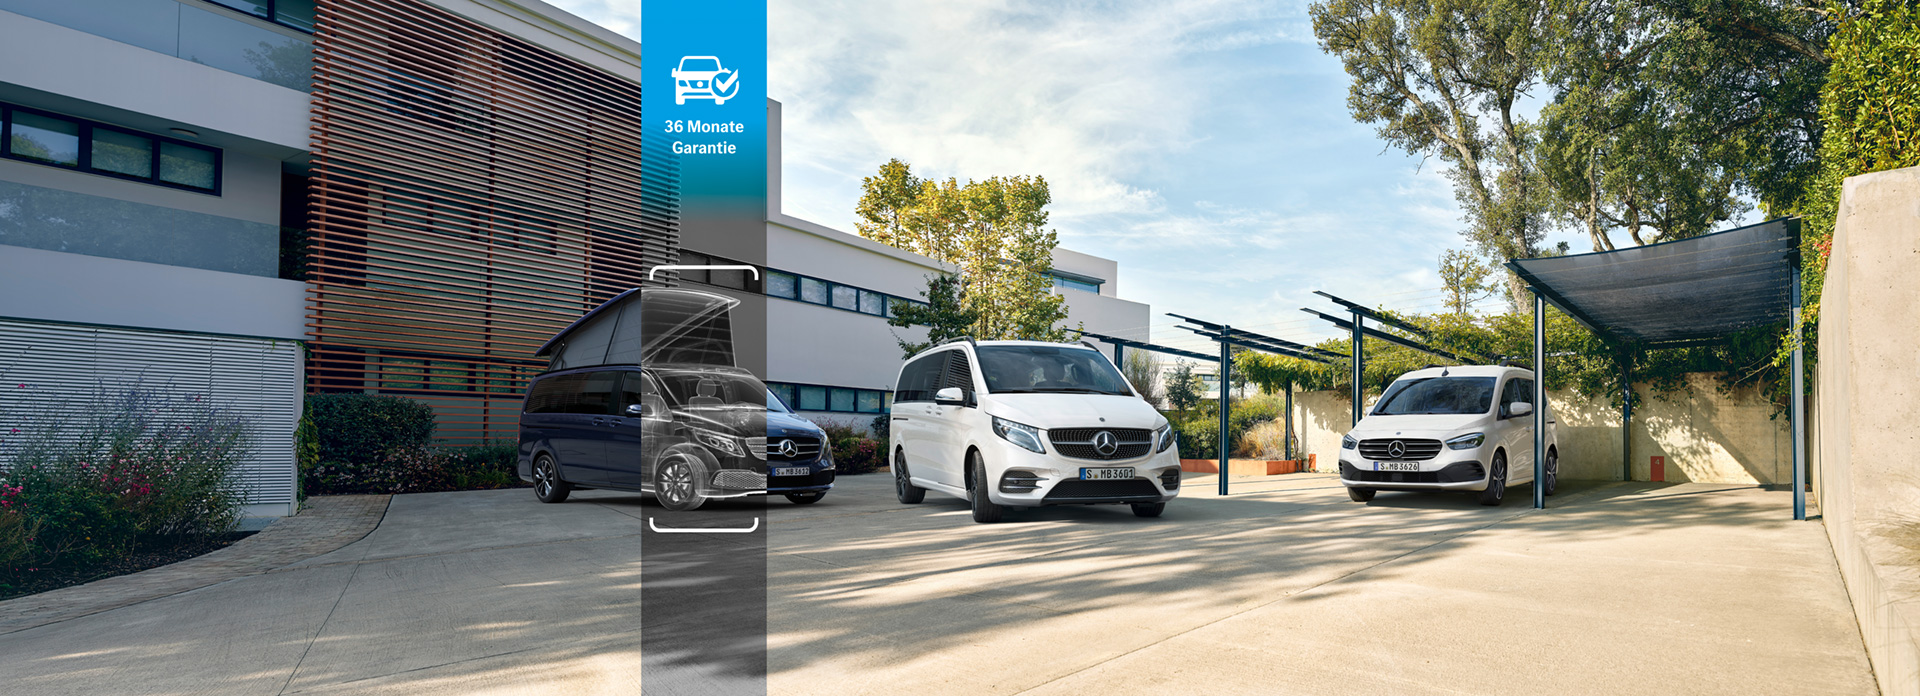 Mercedes-Benz Junge Sterne Transporter bei Schmolck - Jetzt mit 36 Monaten Garantieverlängerung